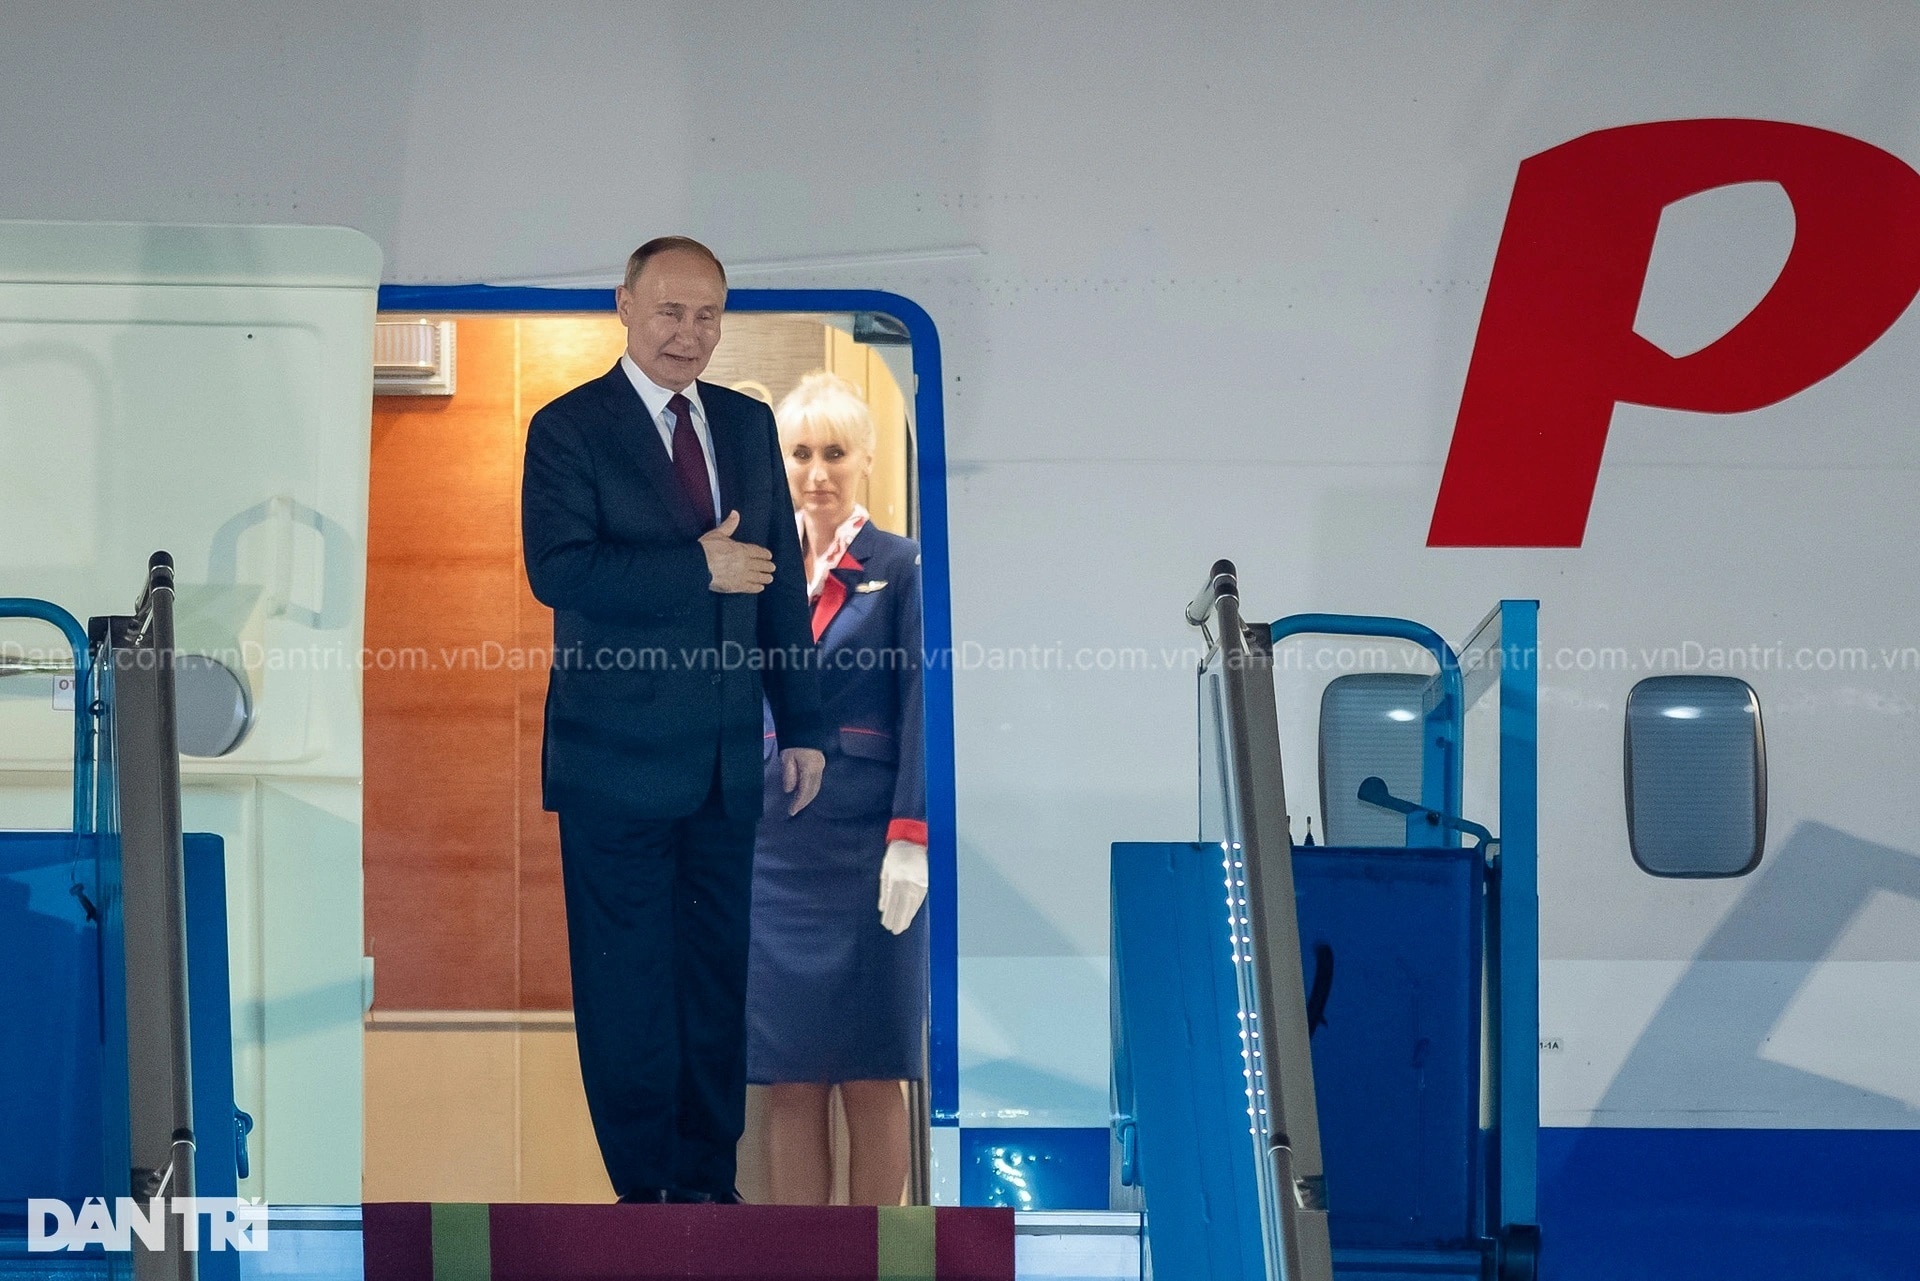 Chuyến thăm của Tổng thống Putin tạo xung lực mới cho hợp tác Việt - Nga - 9